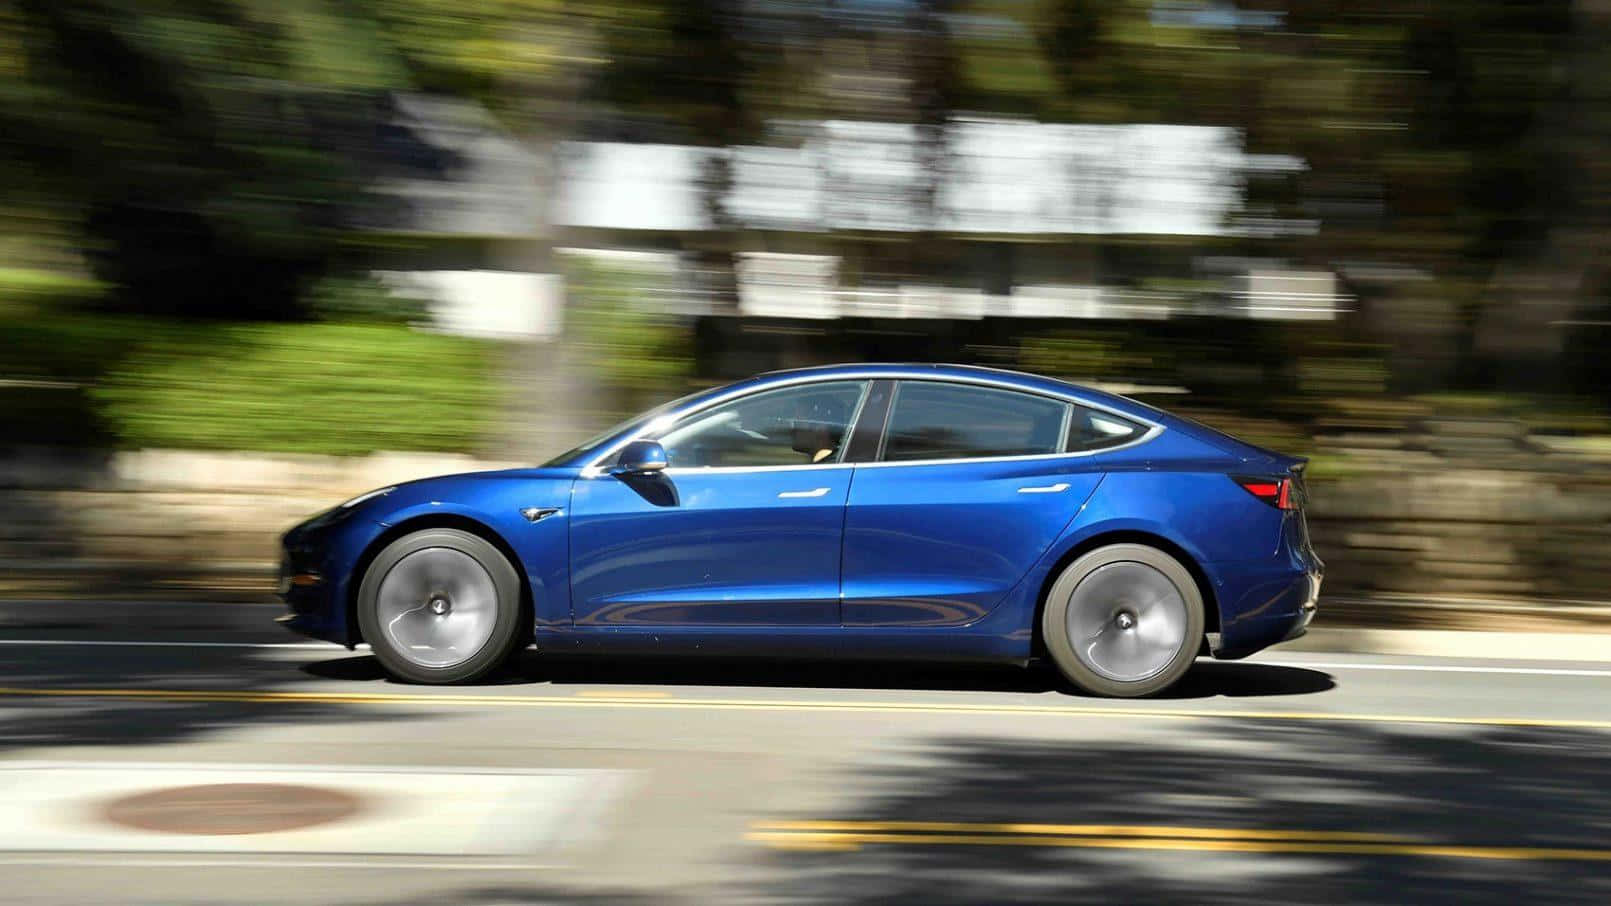 Discover Tesla's innovative Model 3